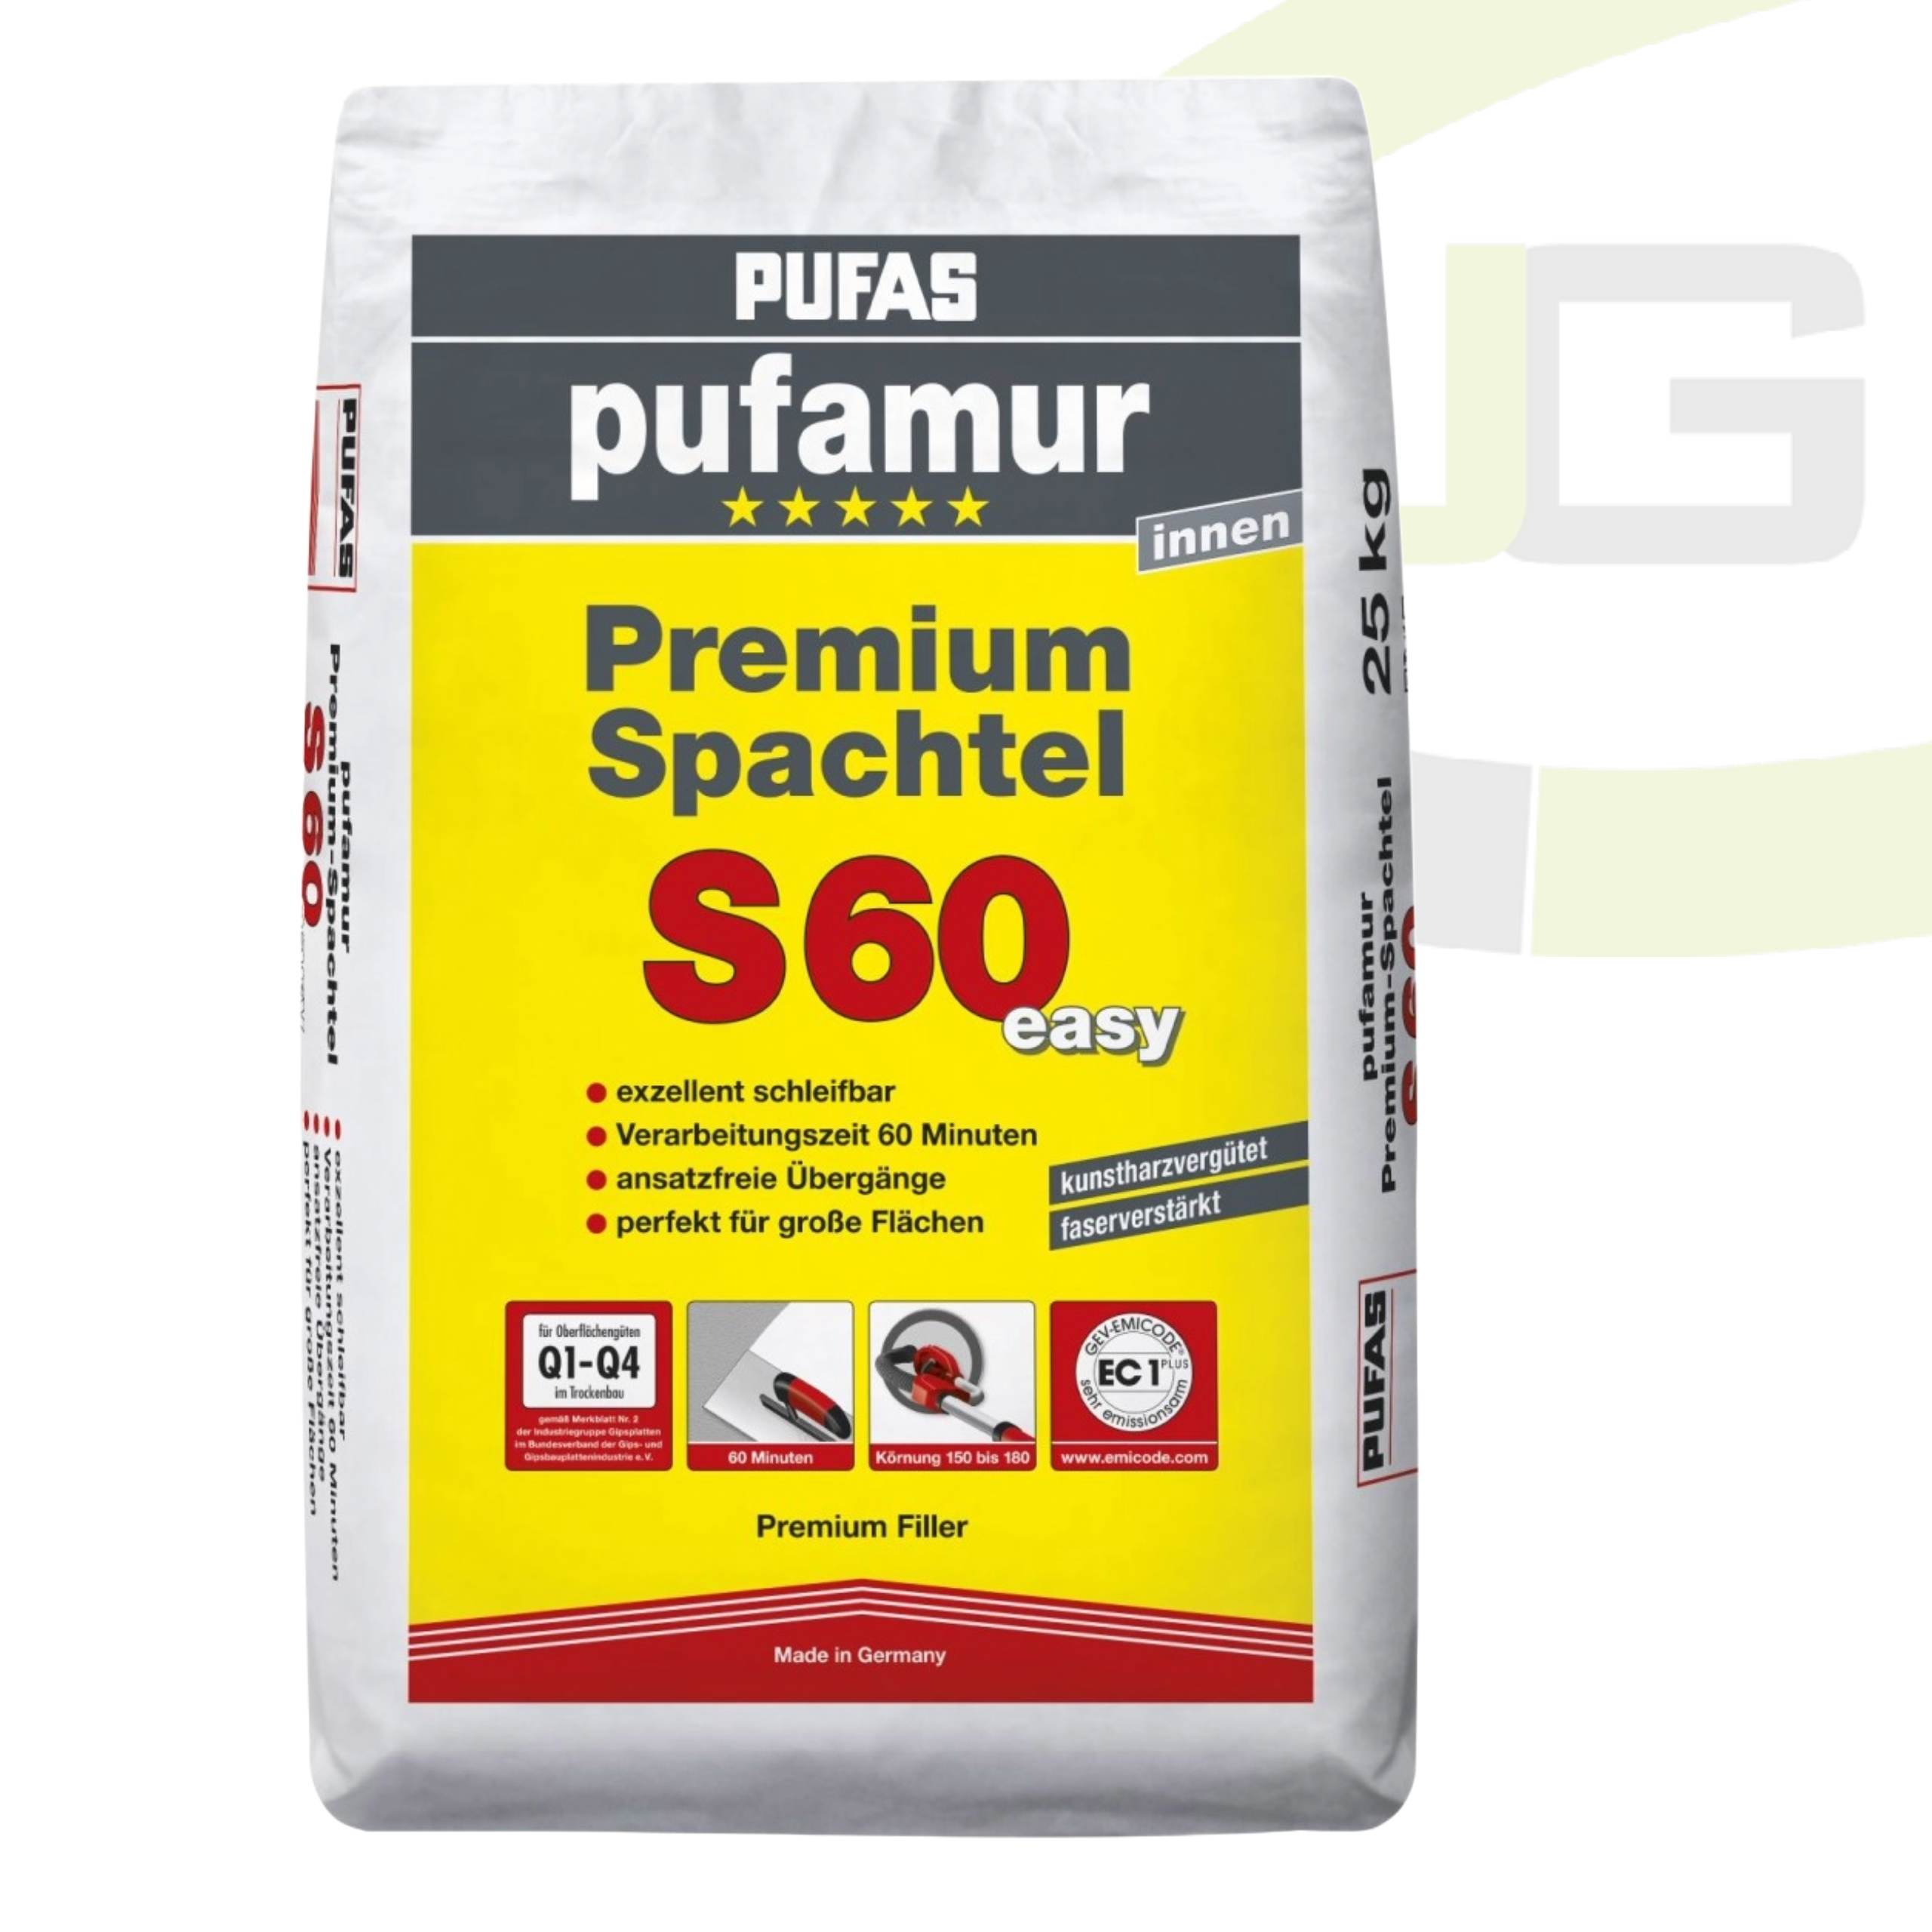 Pufas pufamur Premium-Spachtel S60 easy - 25 KG / Innen-Spachtelmasse / leicht schleifbar